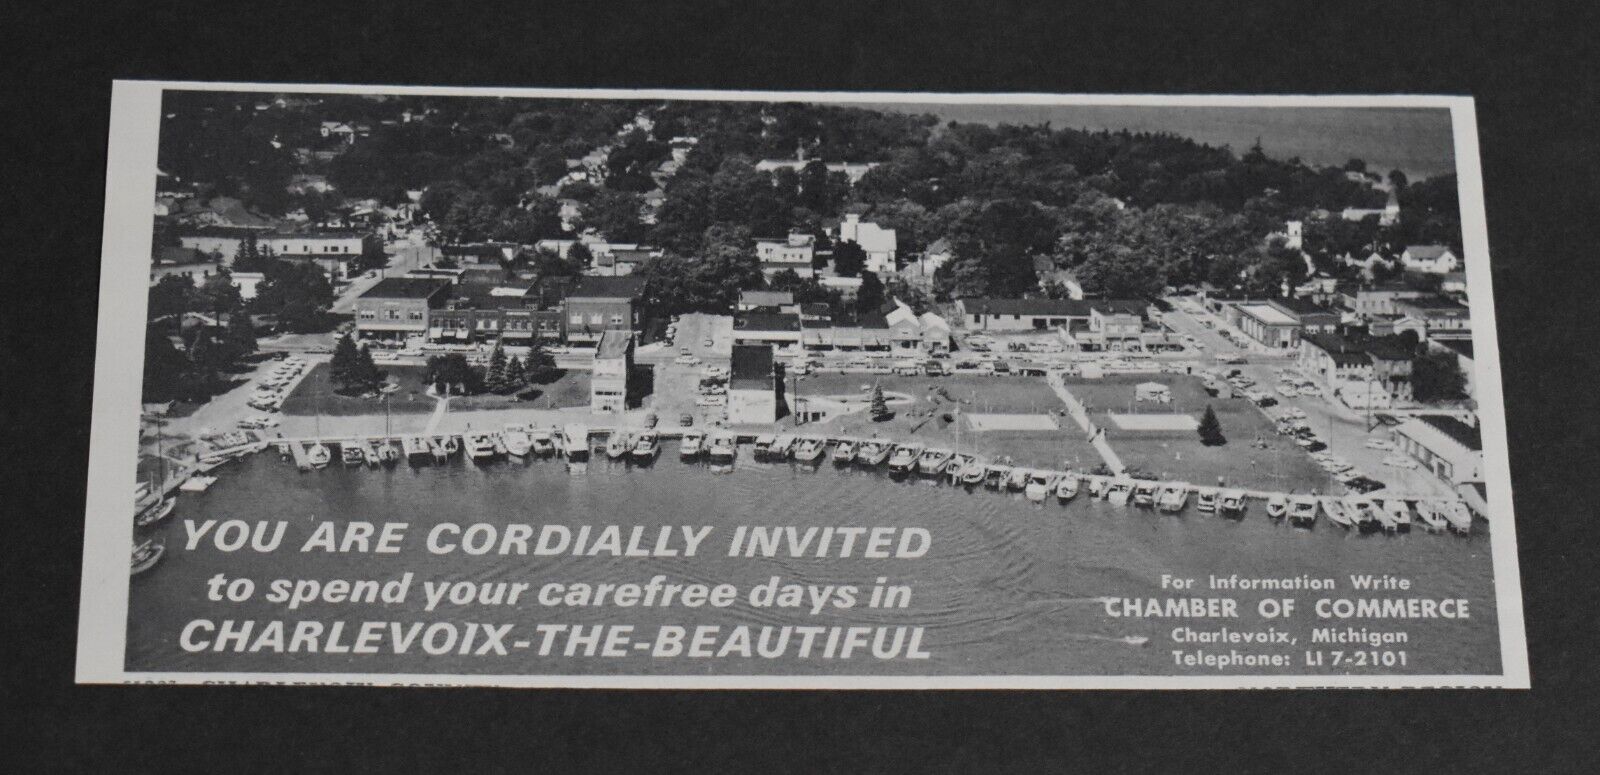 1968 Print Ad Michigan Charlevoix Carefree Days Beautiful Marina Boats art